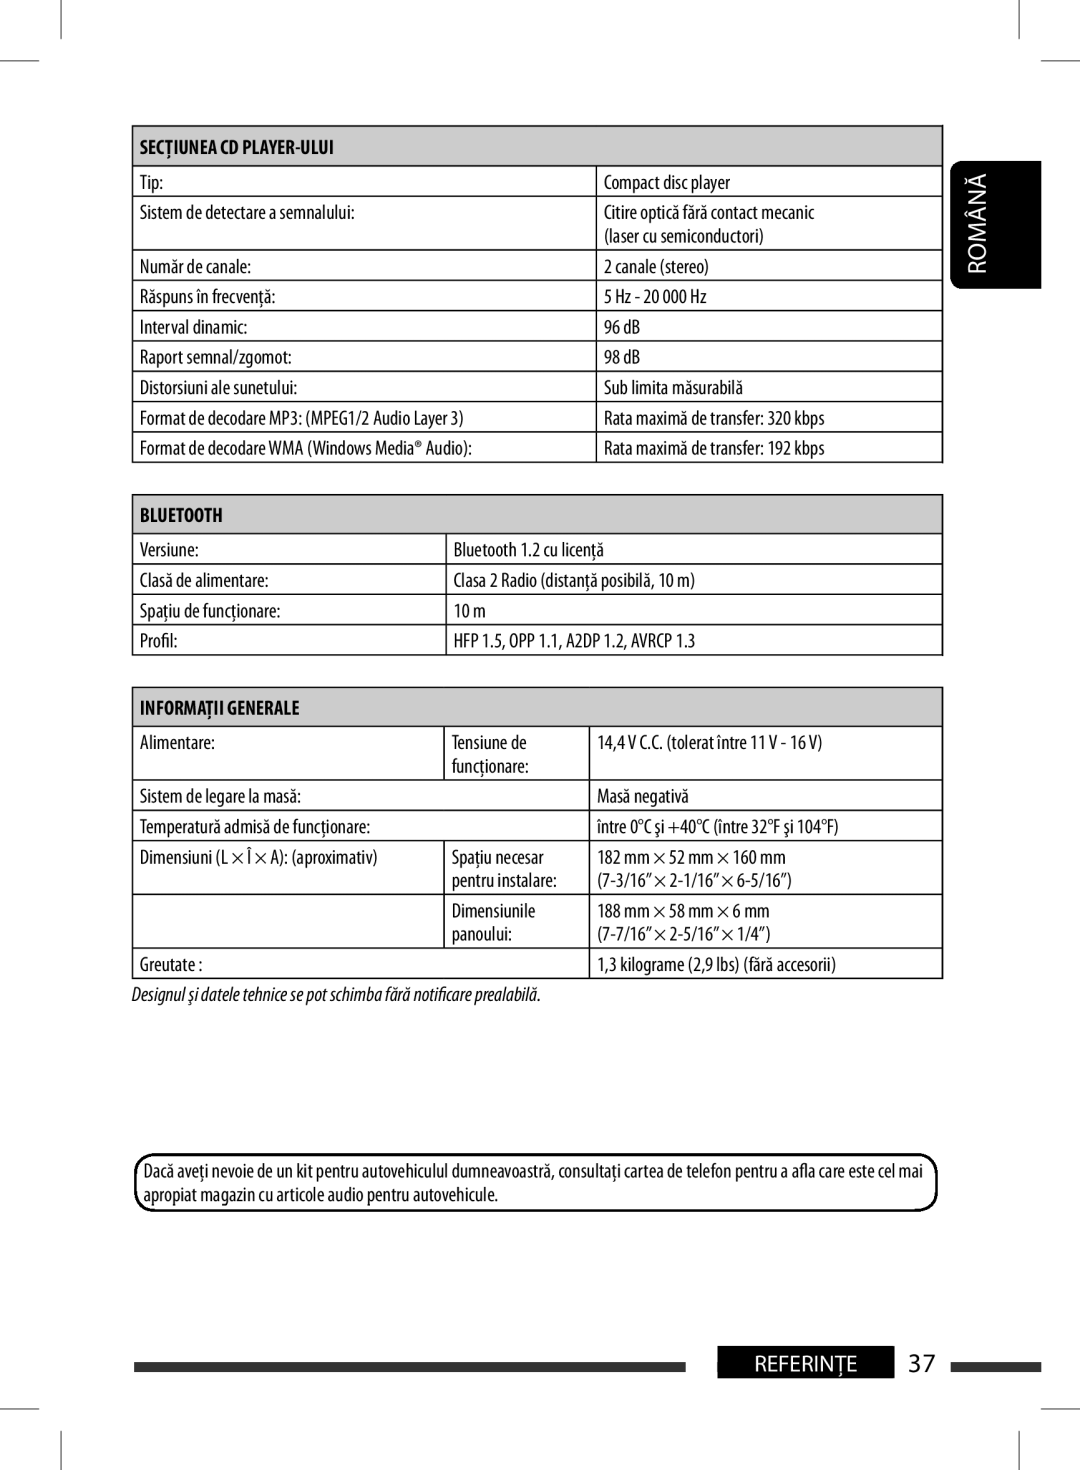 JVC KD-BT11 manual Bluetooth, General, Română, Referinţe 